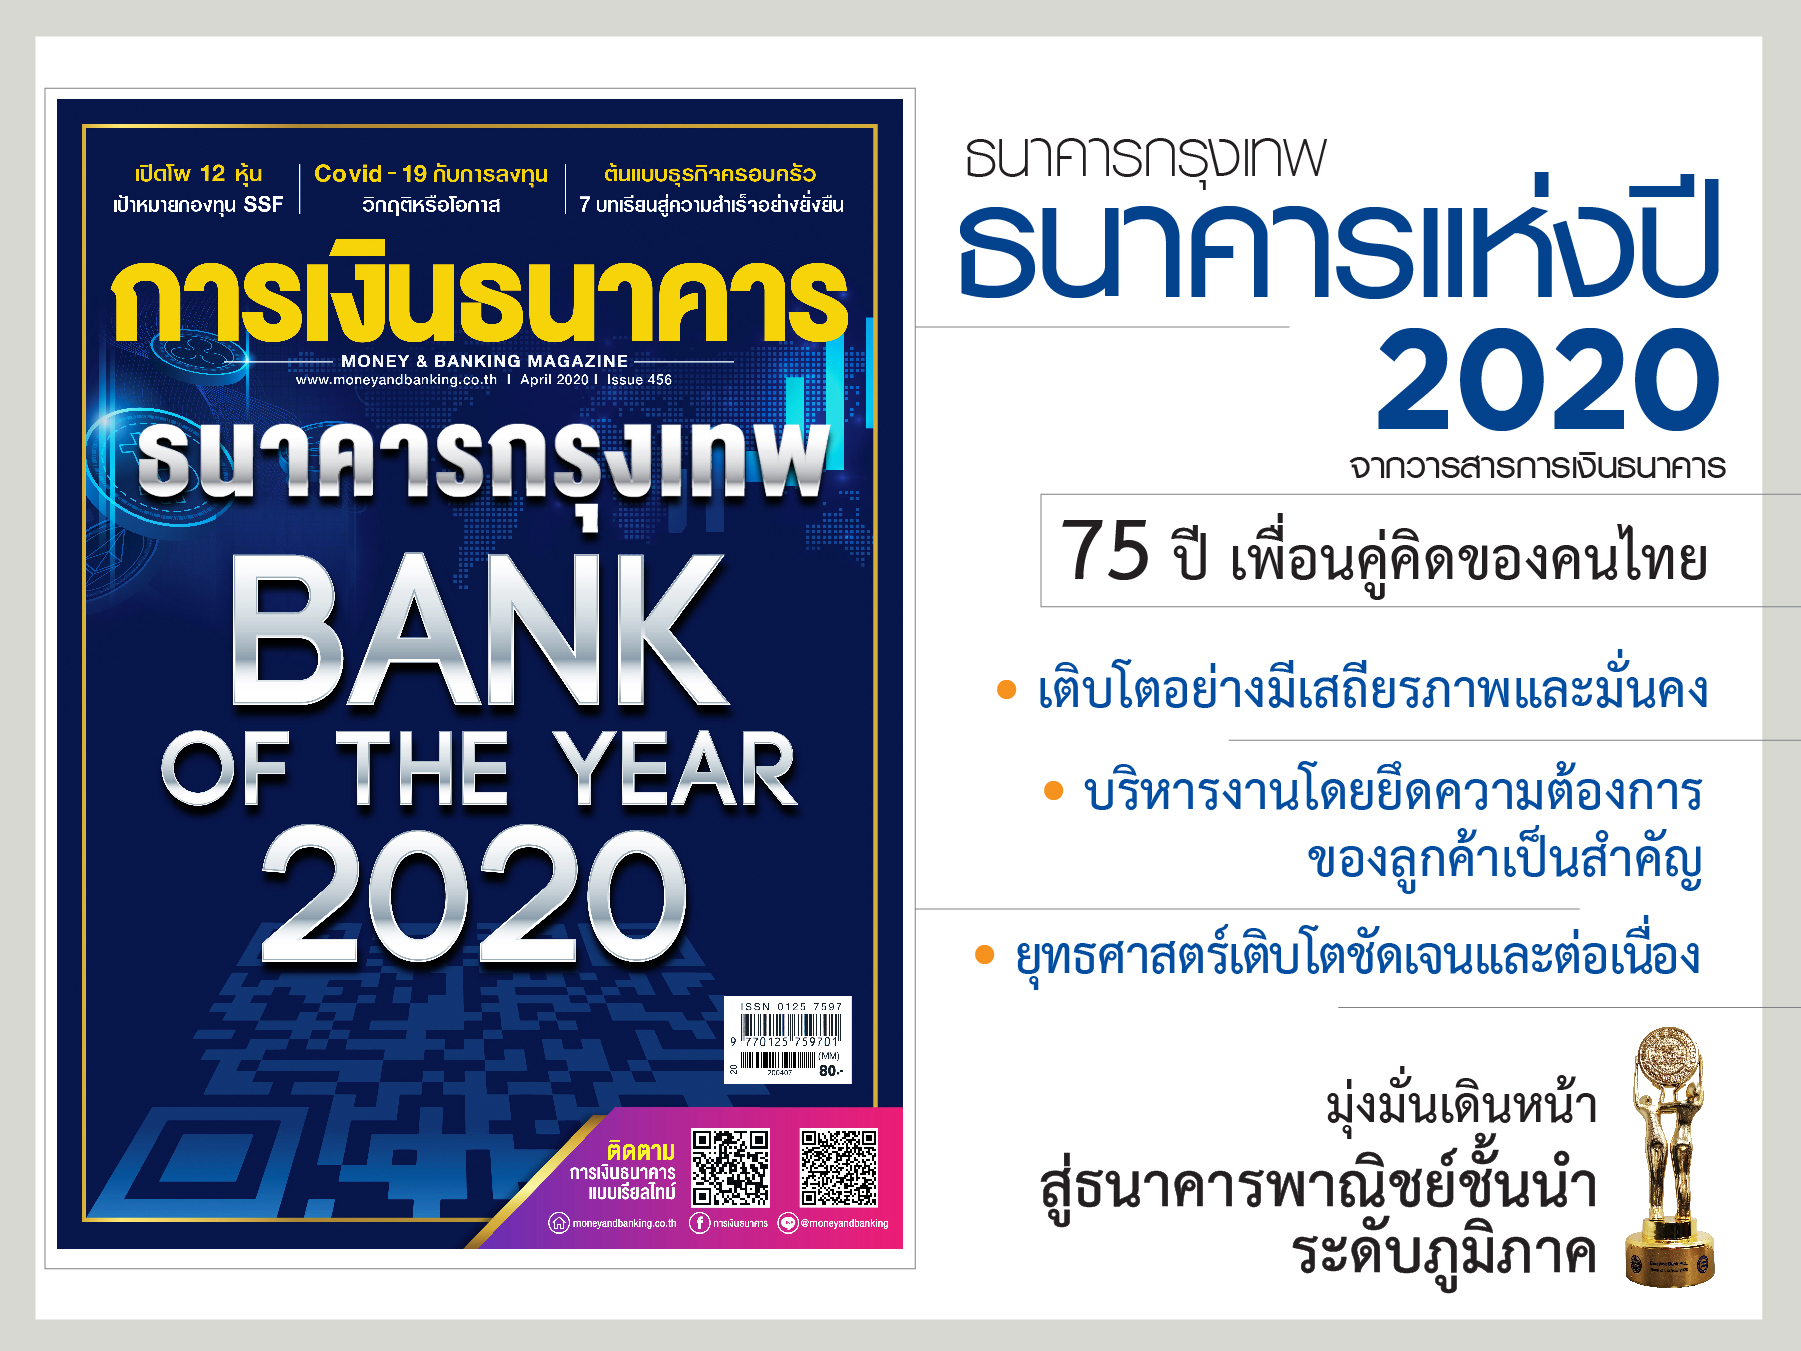 ธนาคารกรุงเทพ ธนาคารแห่งปี 2020 'เพื่อนคู่คิด ของคนไทย สู่ 75 ปีแห่งคุณภาพบริการด้านการเงิน